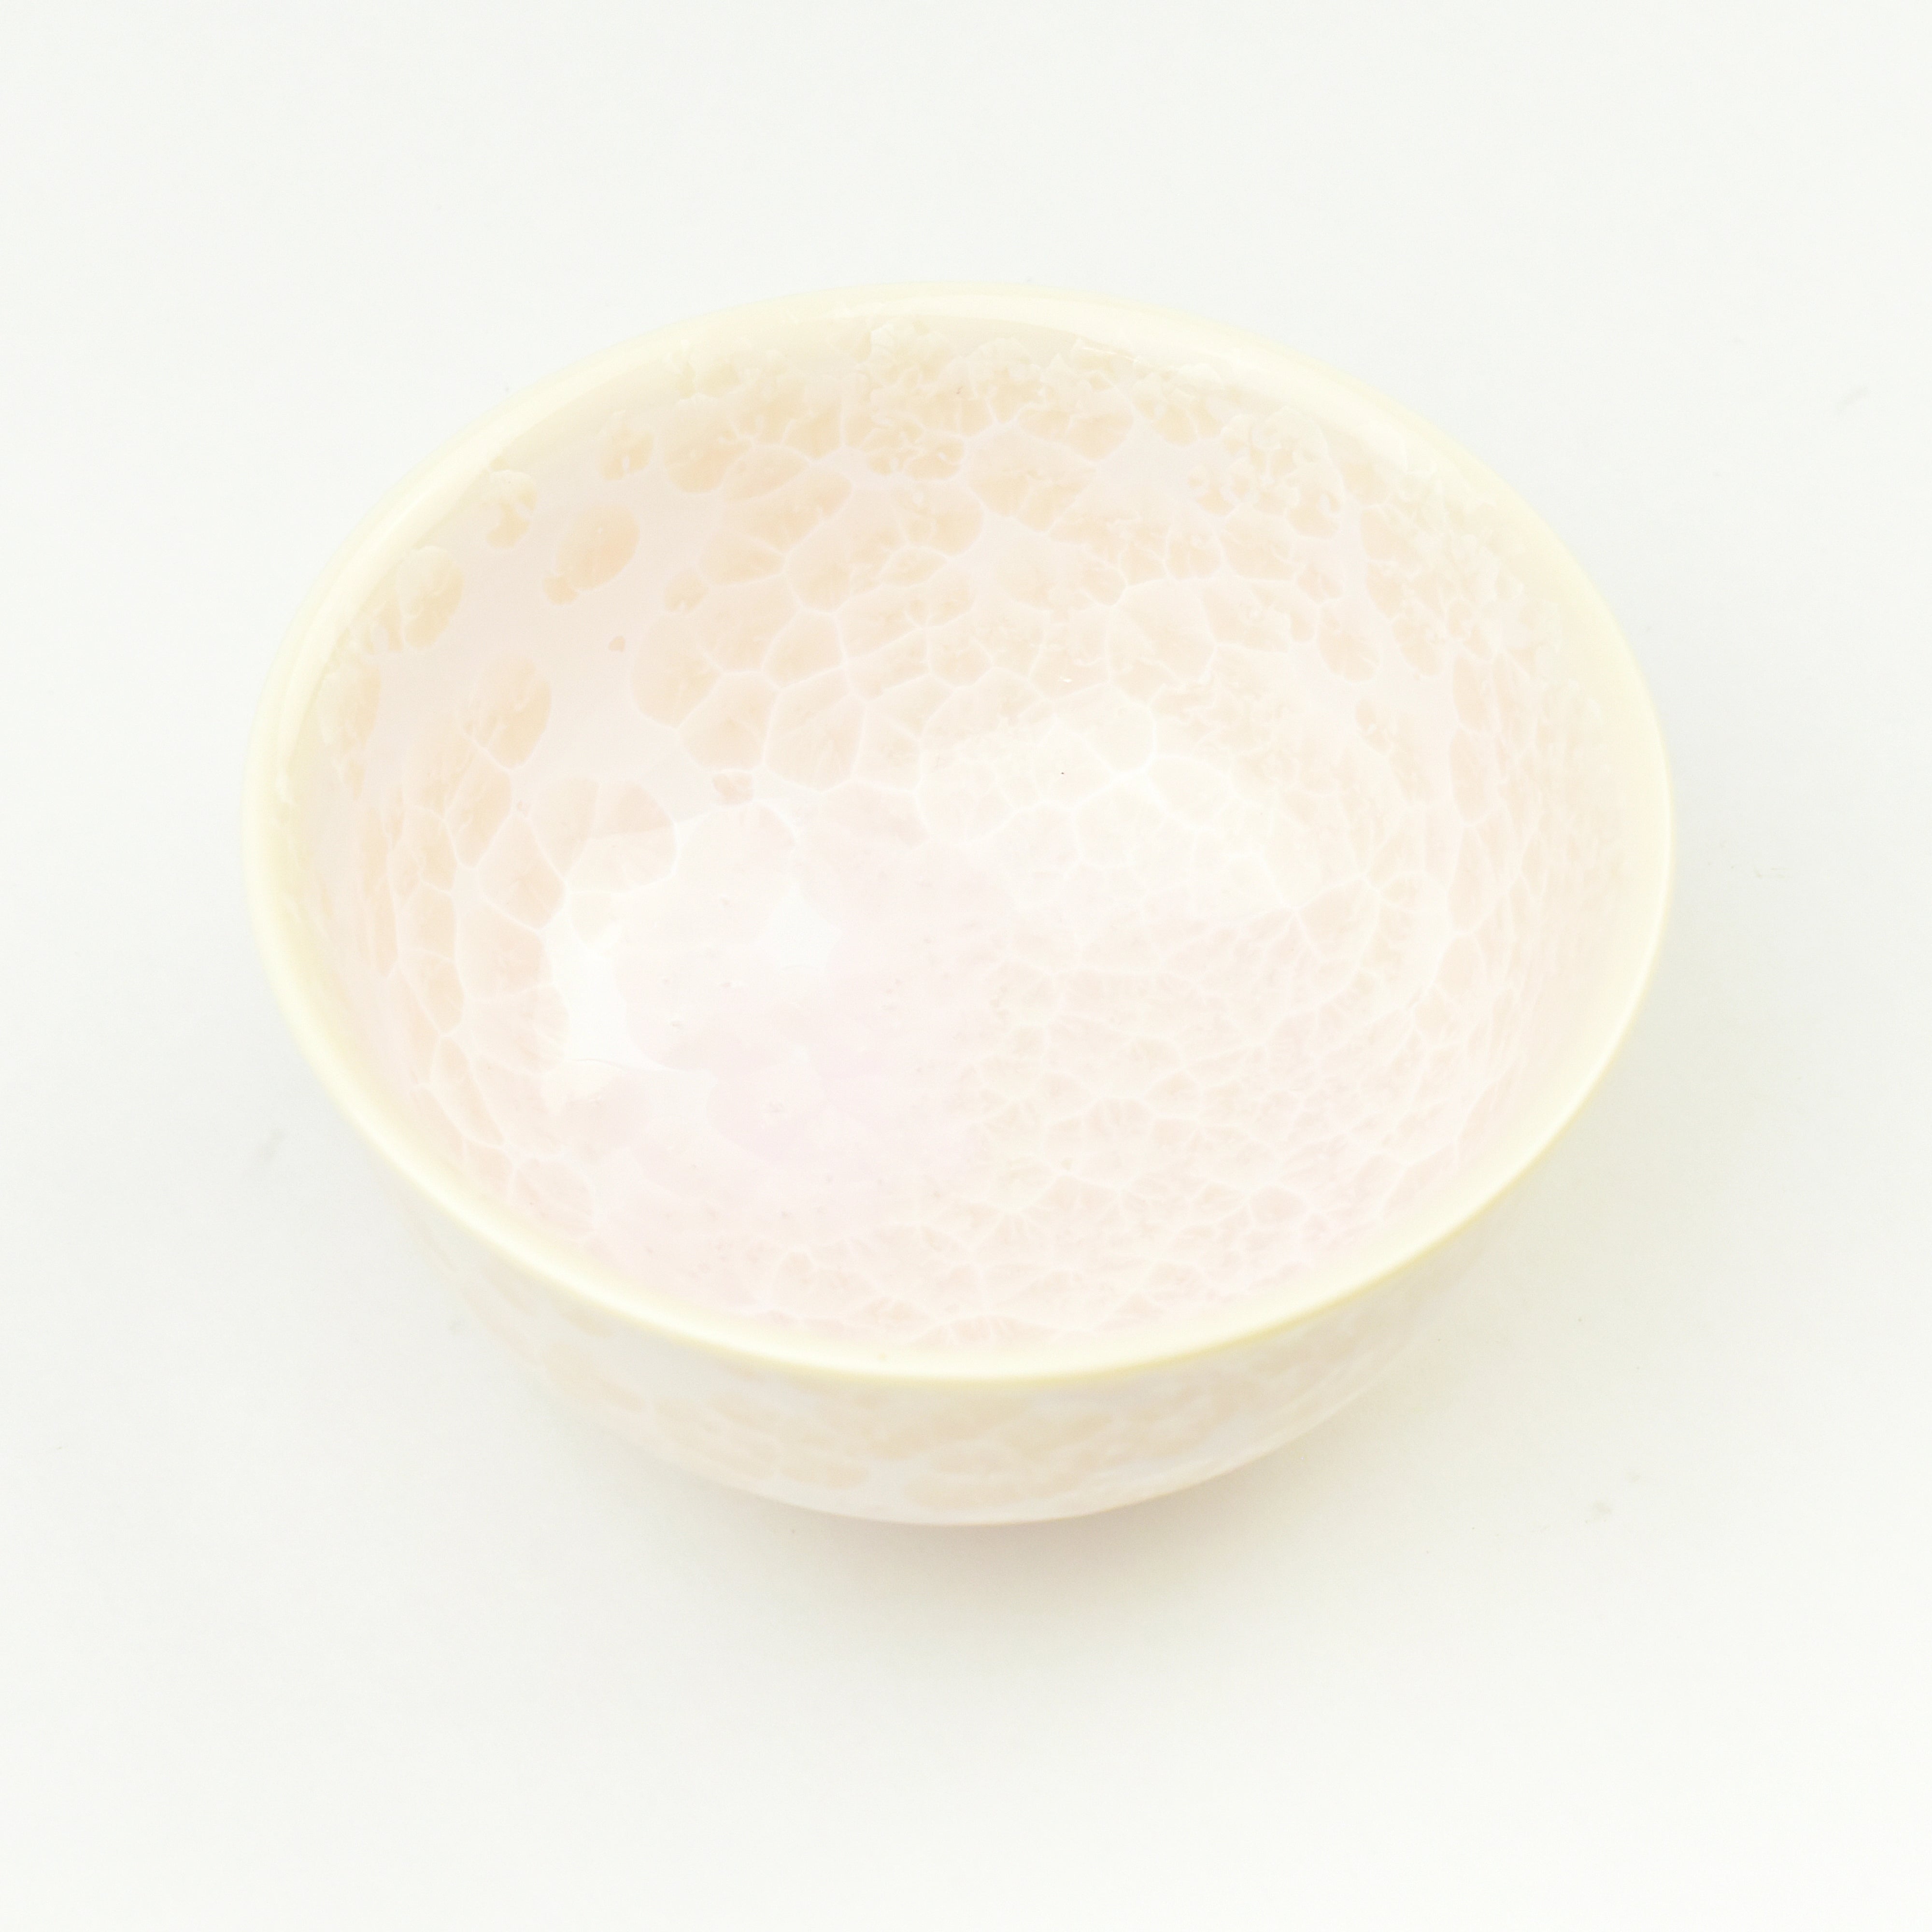 京焼 花結晶 夫婦茶碗 セット 緑/ピンク